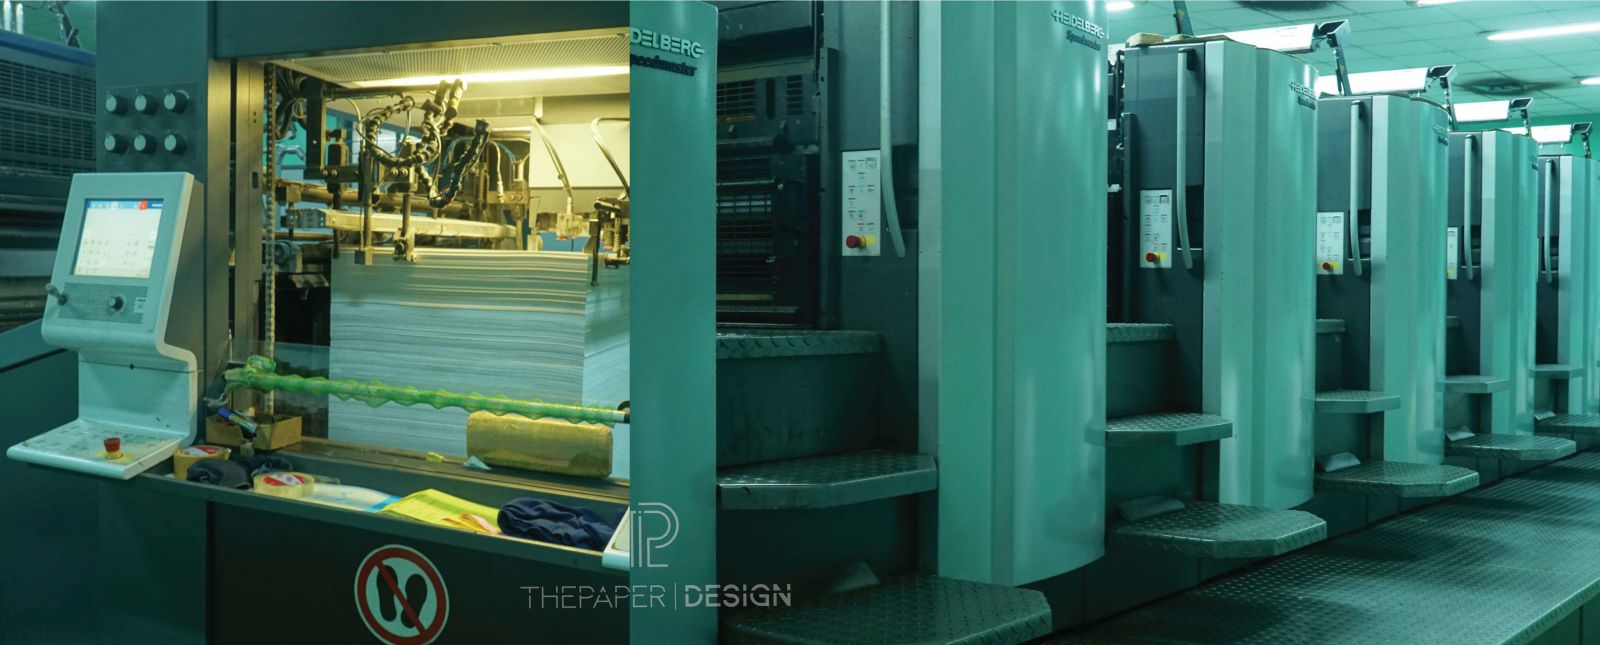 Lịch 3D Sài Gòn Tân Cảng - The Paper Design